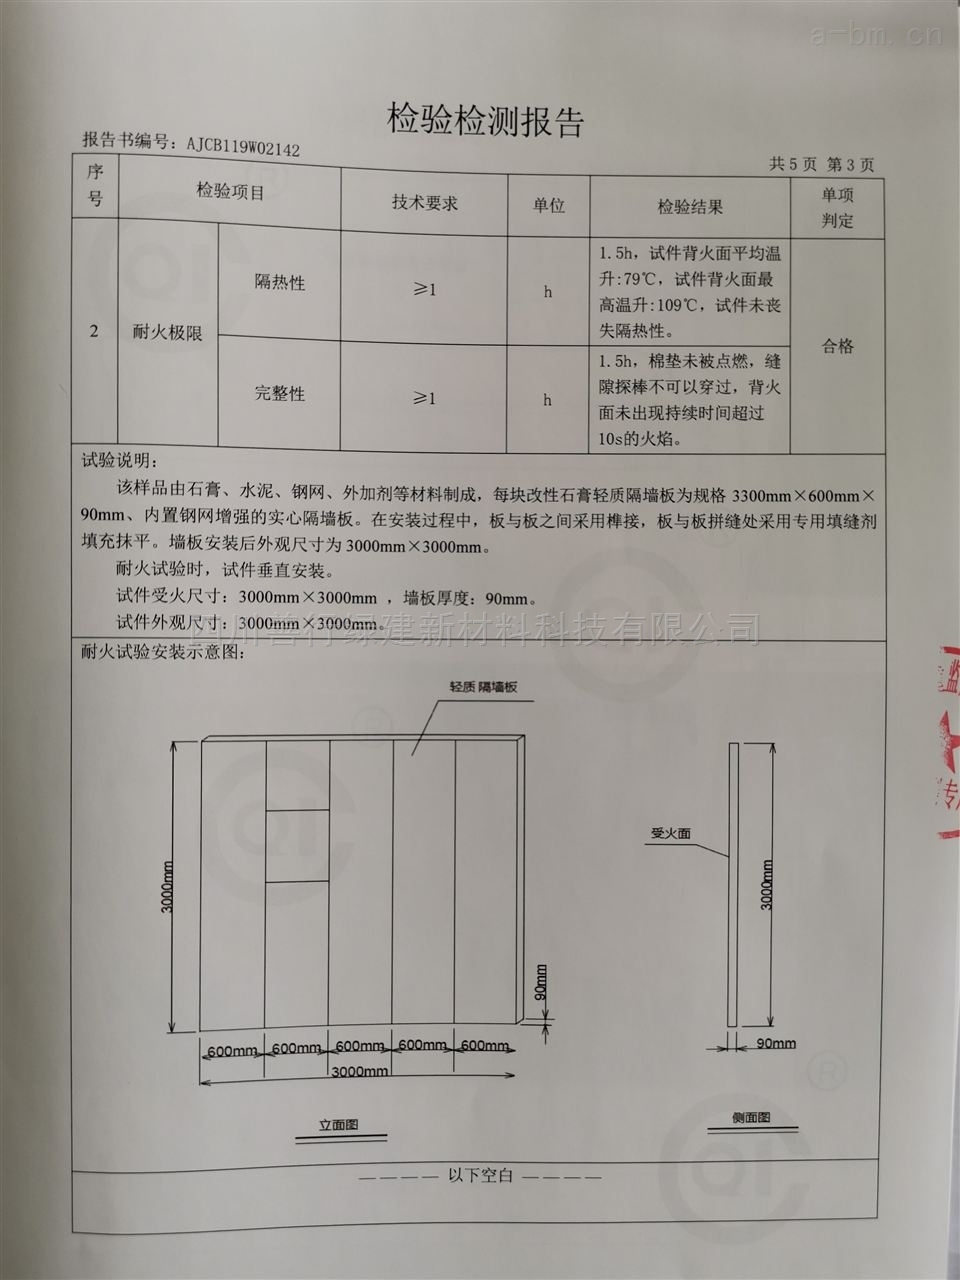 四川善行绿建装配式石膏轻质墙板隔音耐火性能检测报告4